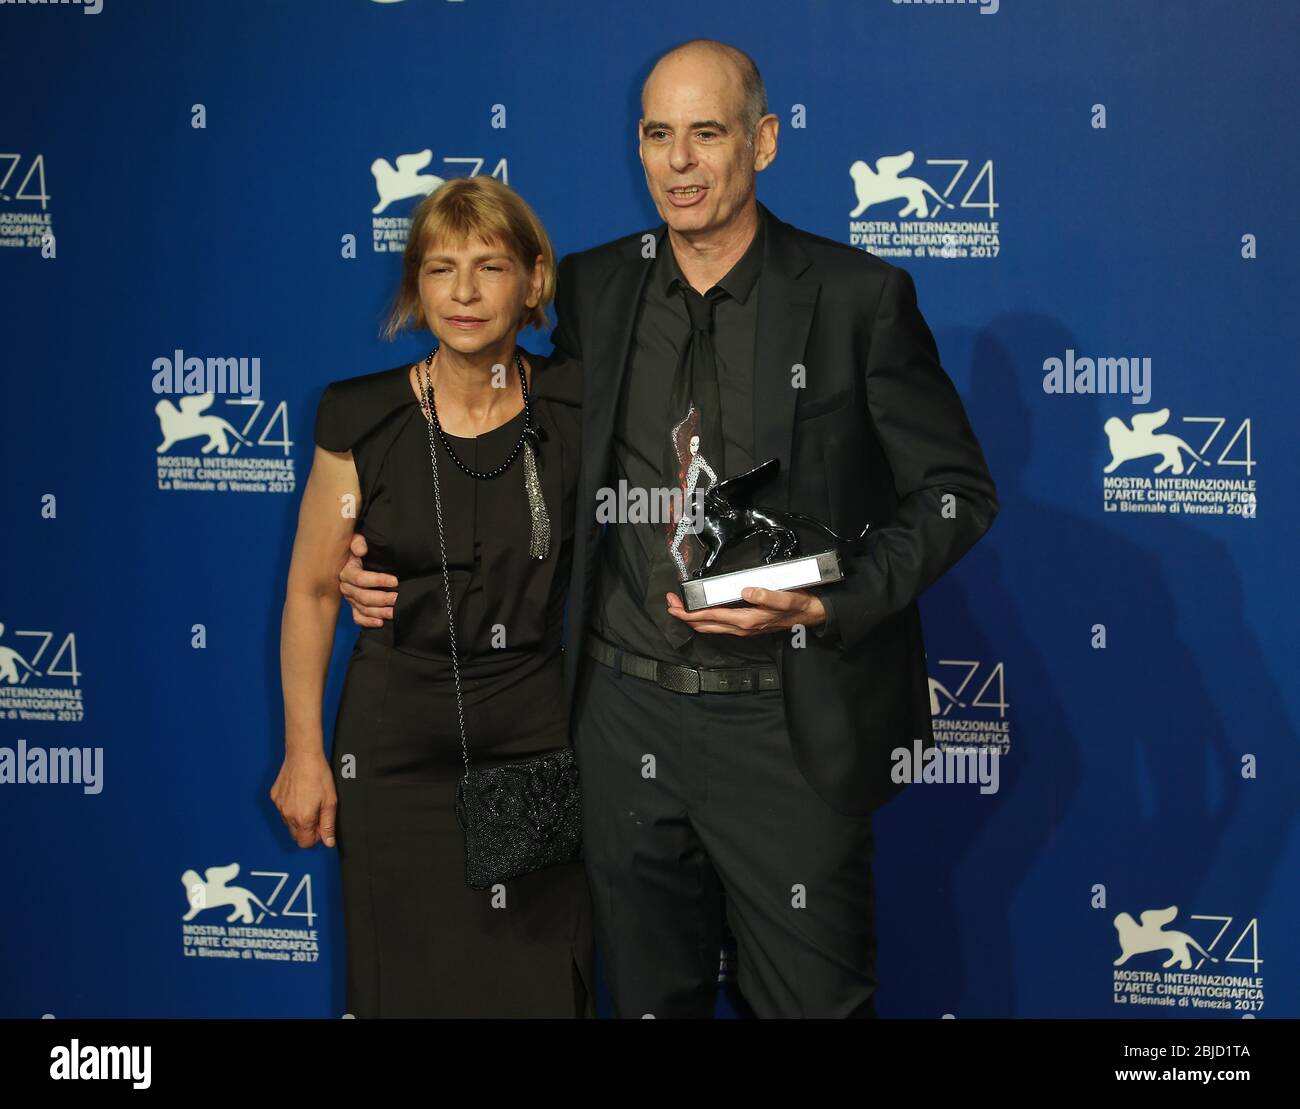 Venedig, Italien. 09. September 2017. Laura Maoz und Samuel Maoz Pose mit dem Silbernen Löwen - Preis der Jury für 'Foxtrot' Stockfoto